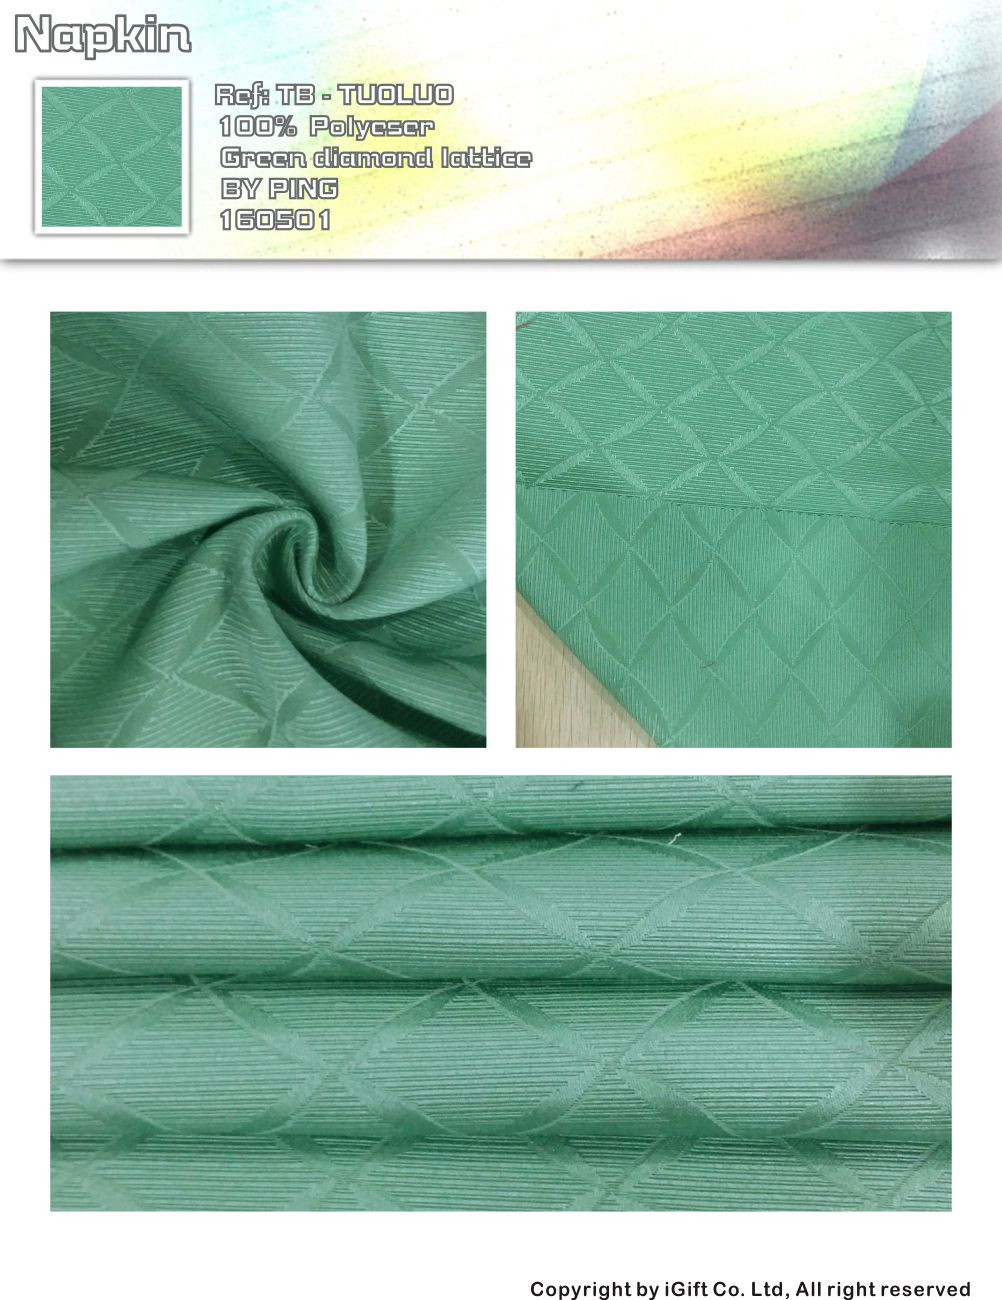 Napkin-green diamond lattice